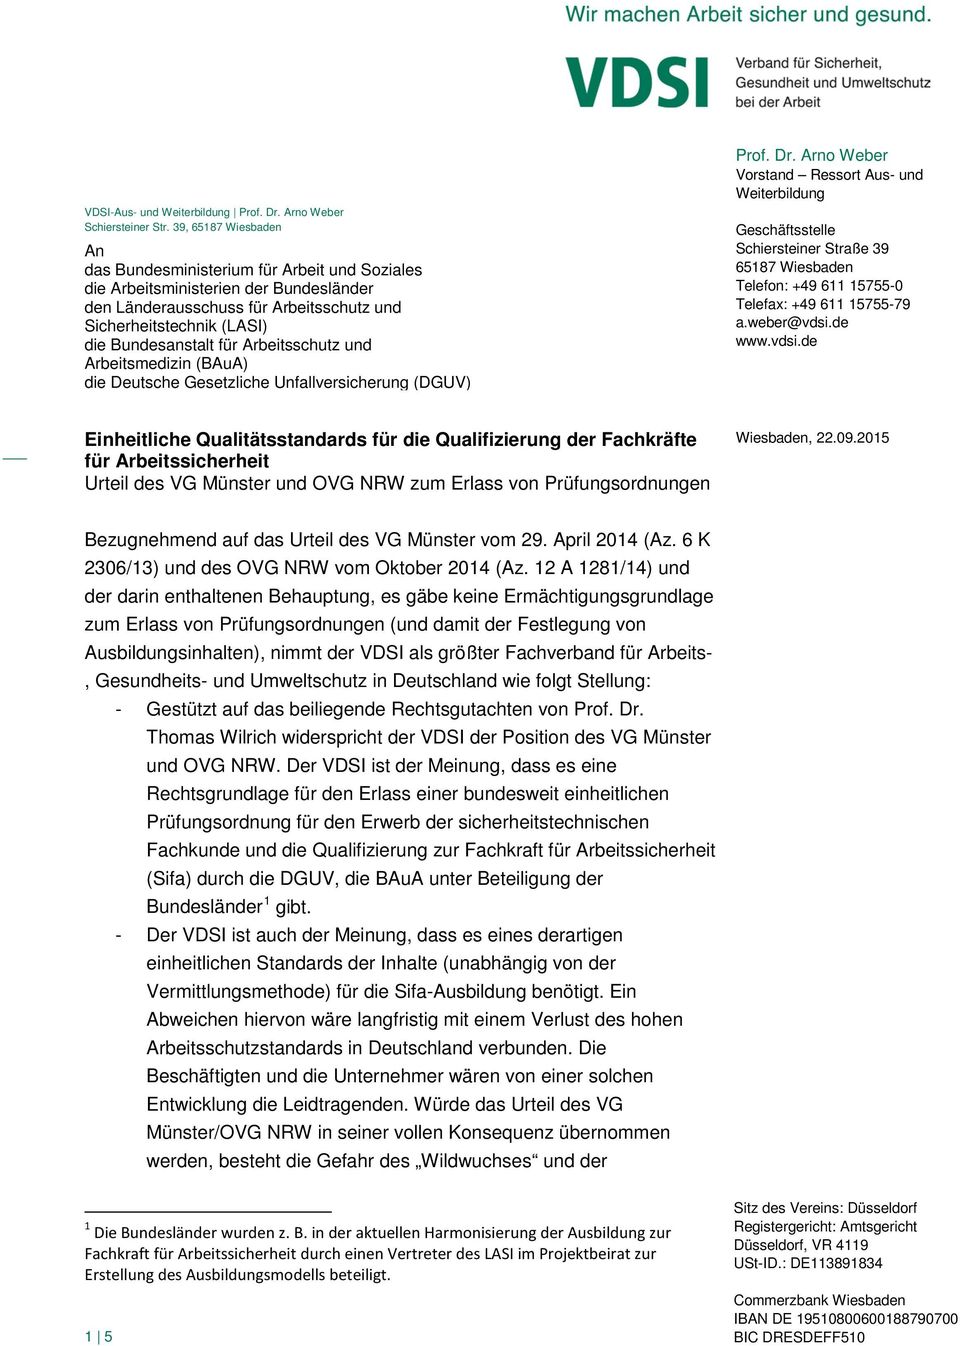 Arbeitsschutz und Arbeitsmedizin (BAuA) die Deutsche Gesetzliche Unfallversicherung (DGUV) Prof. Dr.